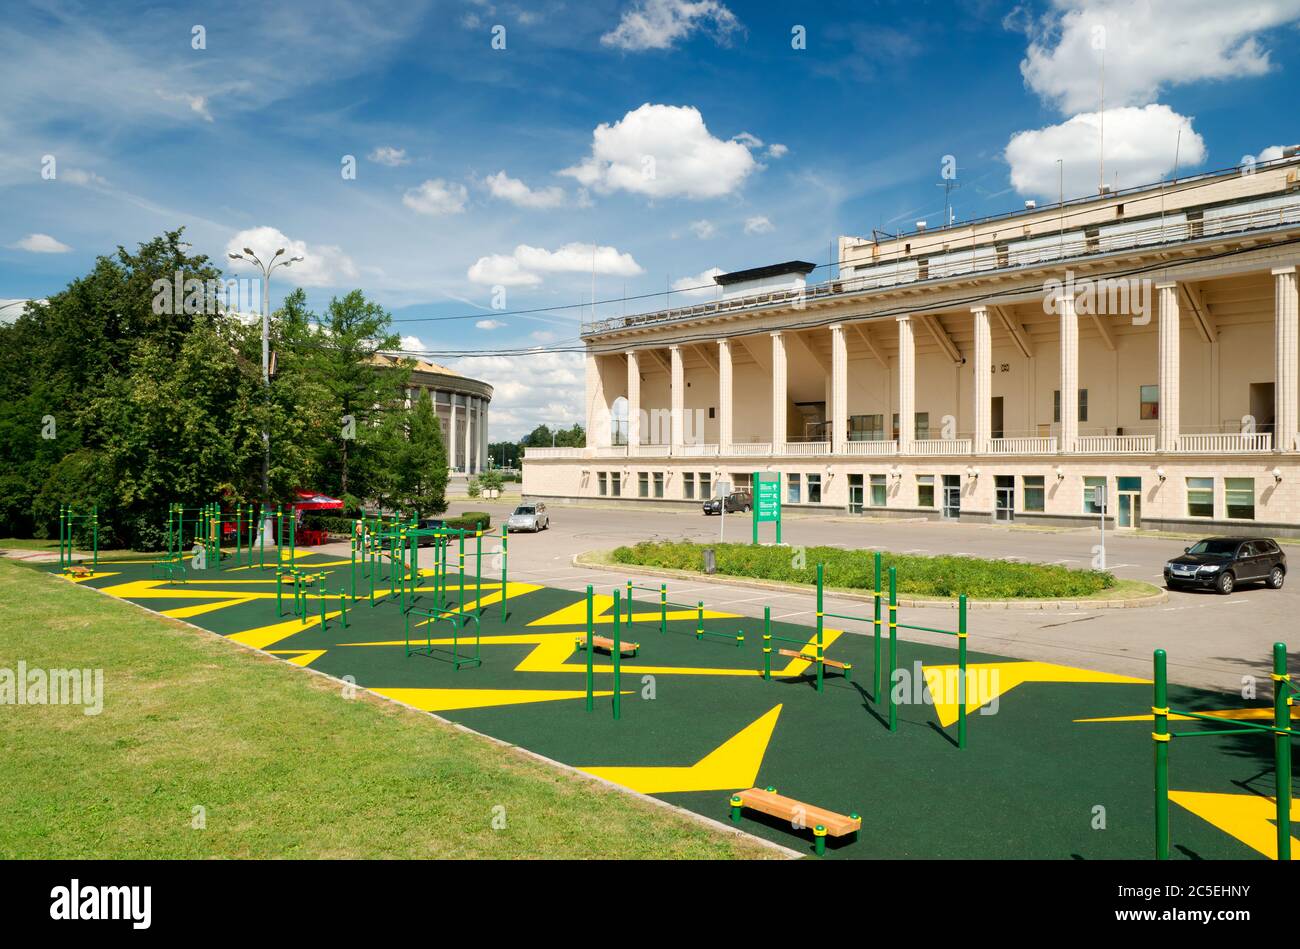 Sports gymnastic ground on the street in Luzhniki, Moscow Stock Photo